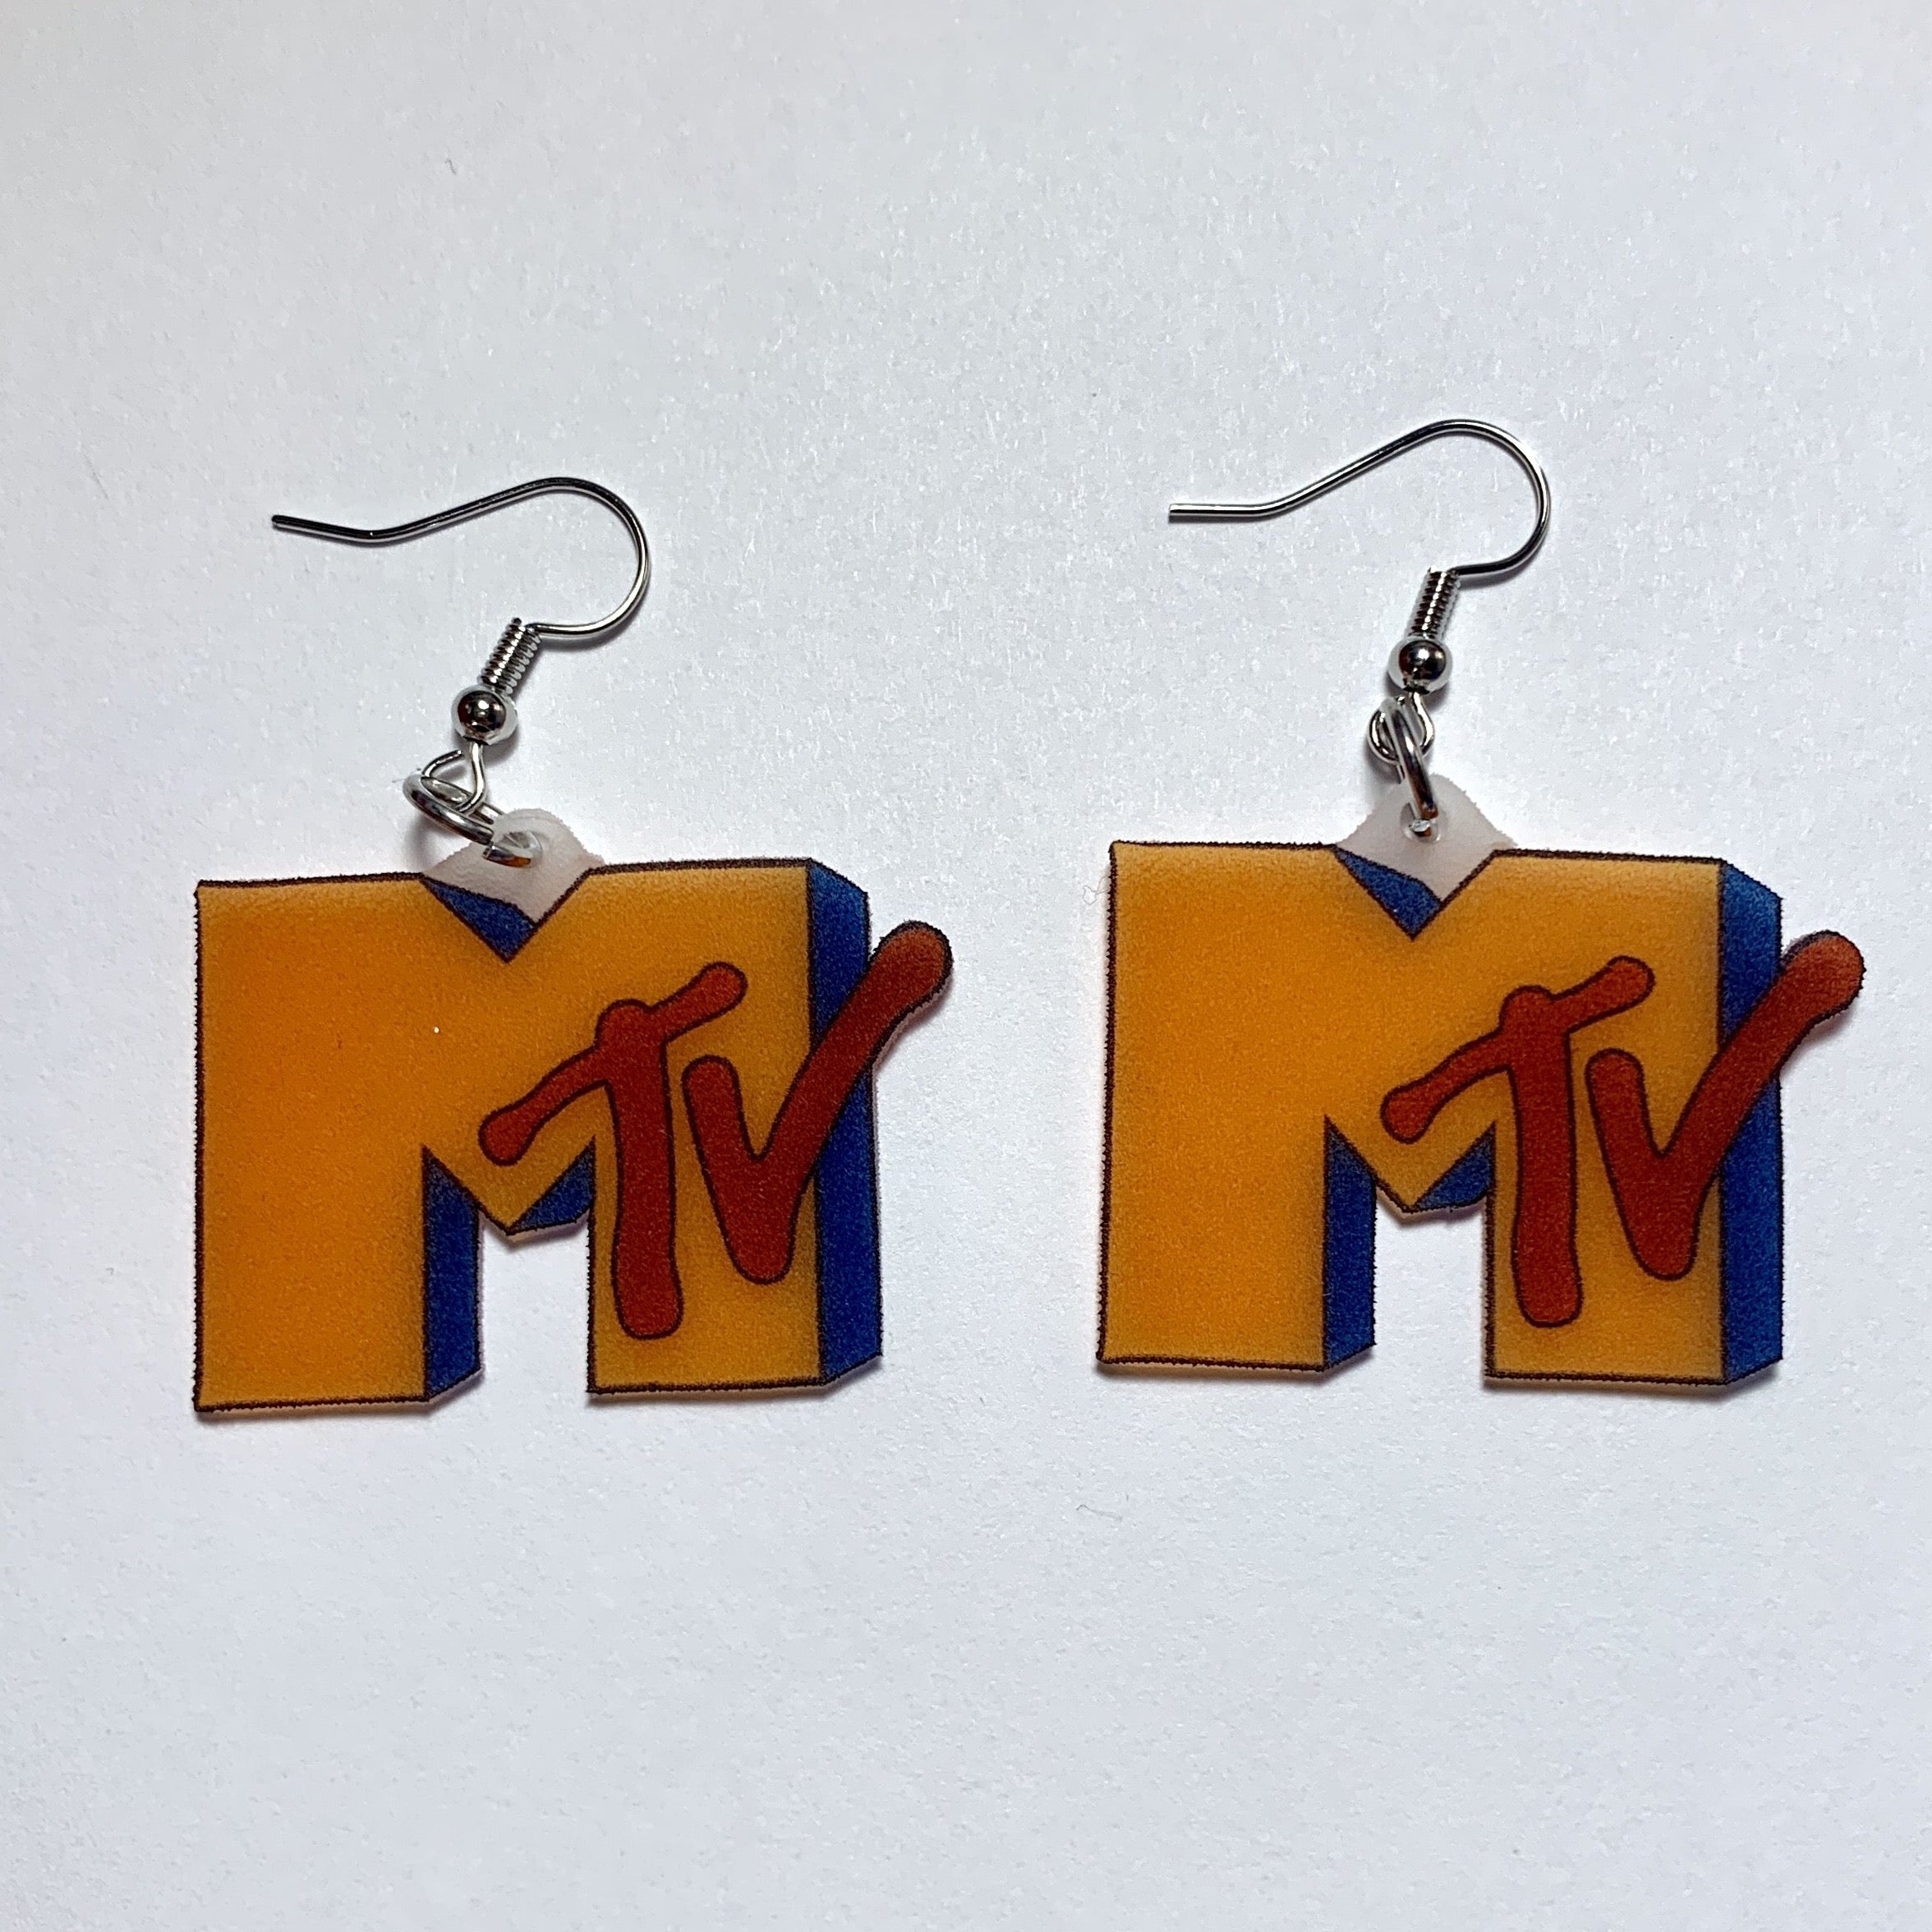 Old retro MTV Logo Handmade Earrings!